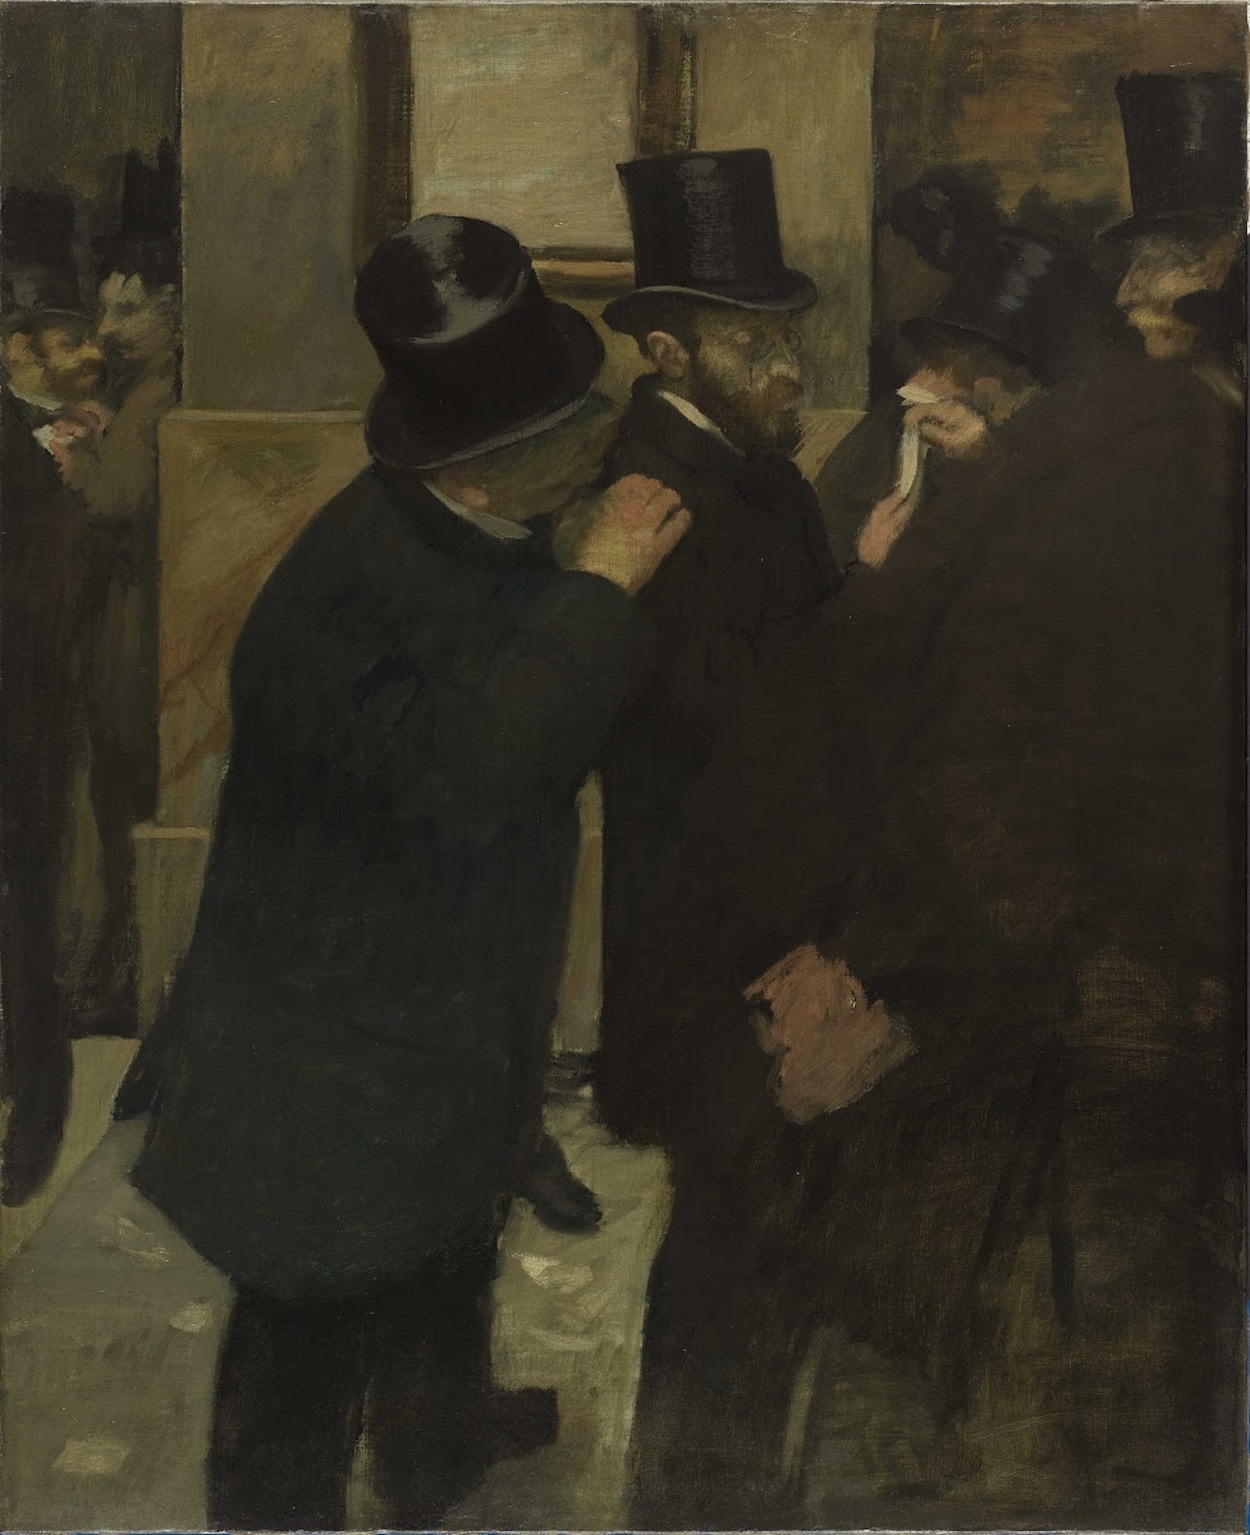 Retratos na Bolsa de Valores by Edgar Degas - 1879 - 100 x 82 cm Musée d'Orsay